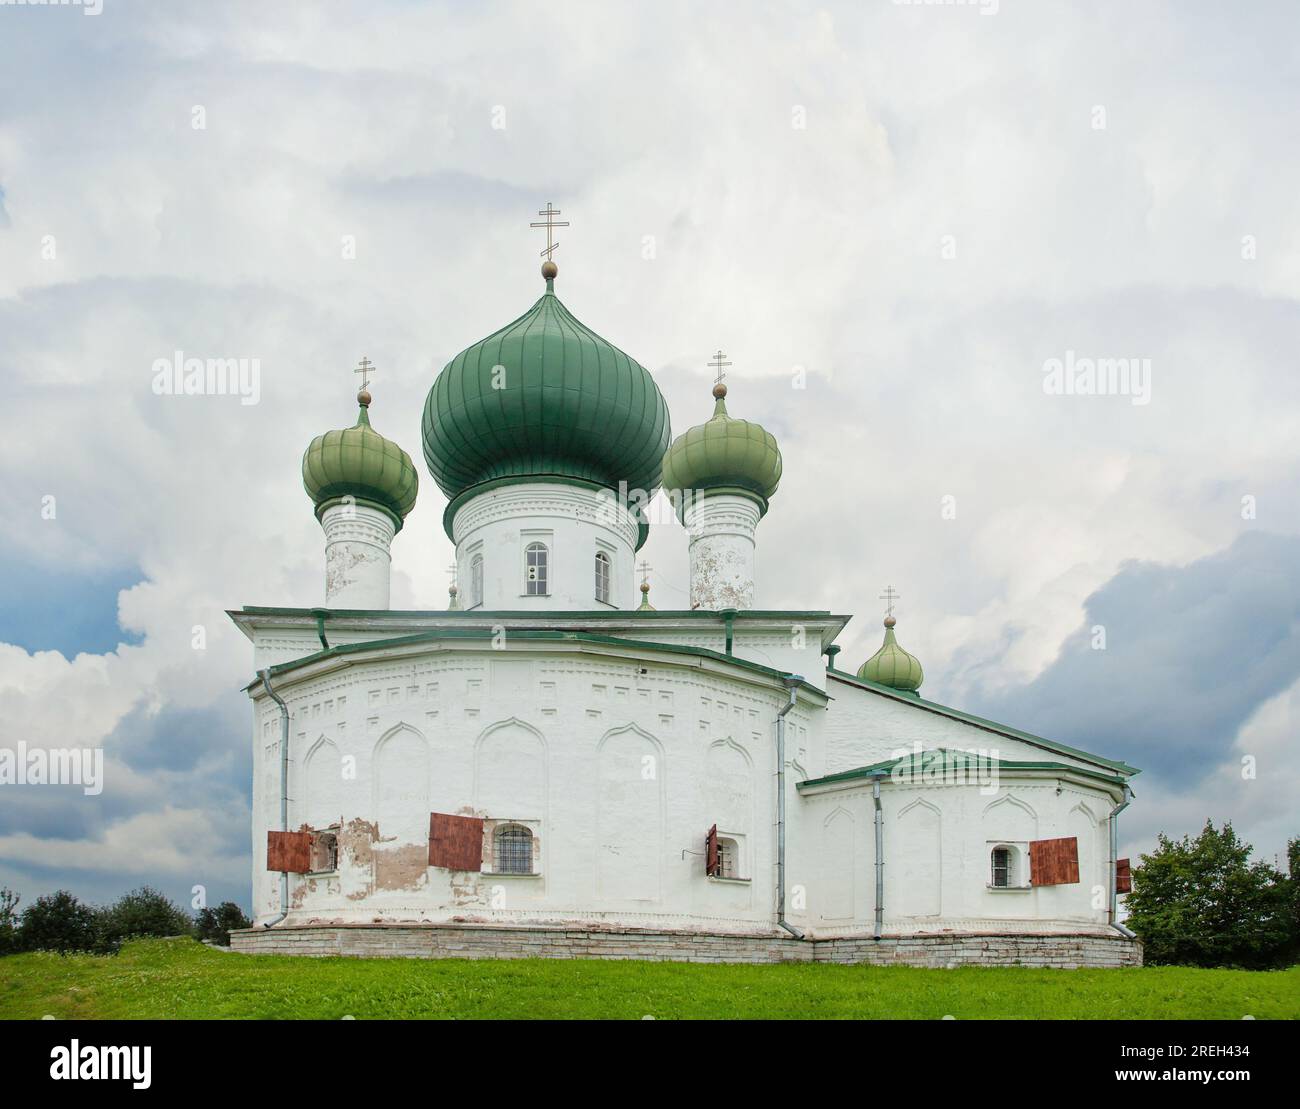 Chiesa bianca con cupole verdi nella vecchia Ladoga, in Russia. Vecchia chiesa ortodossa orientale Foto Stock